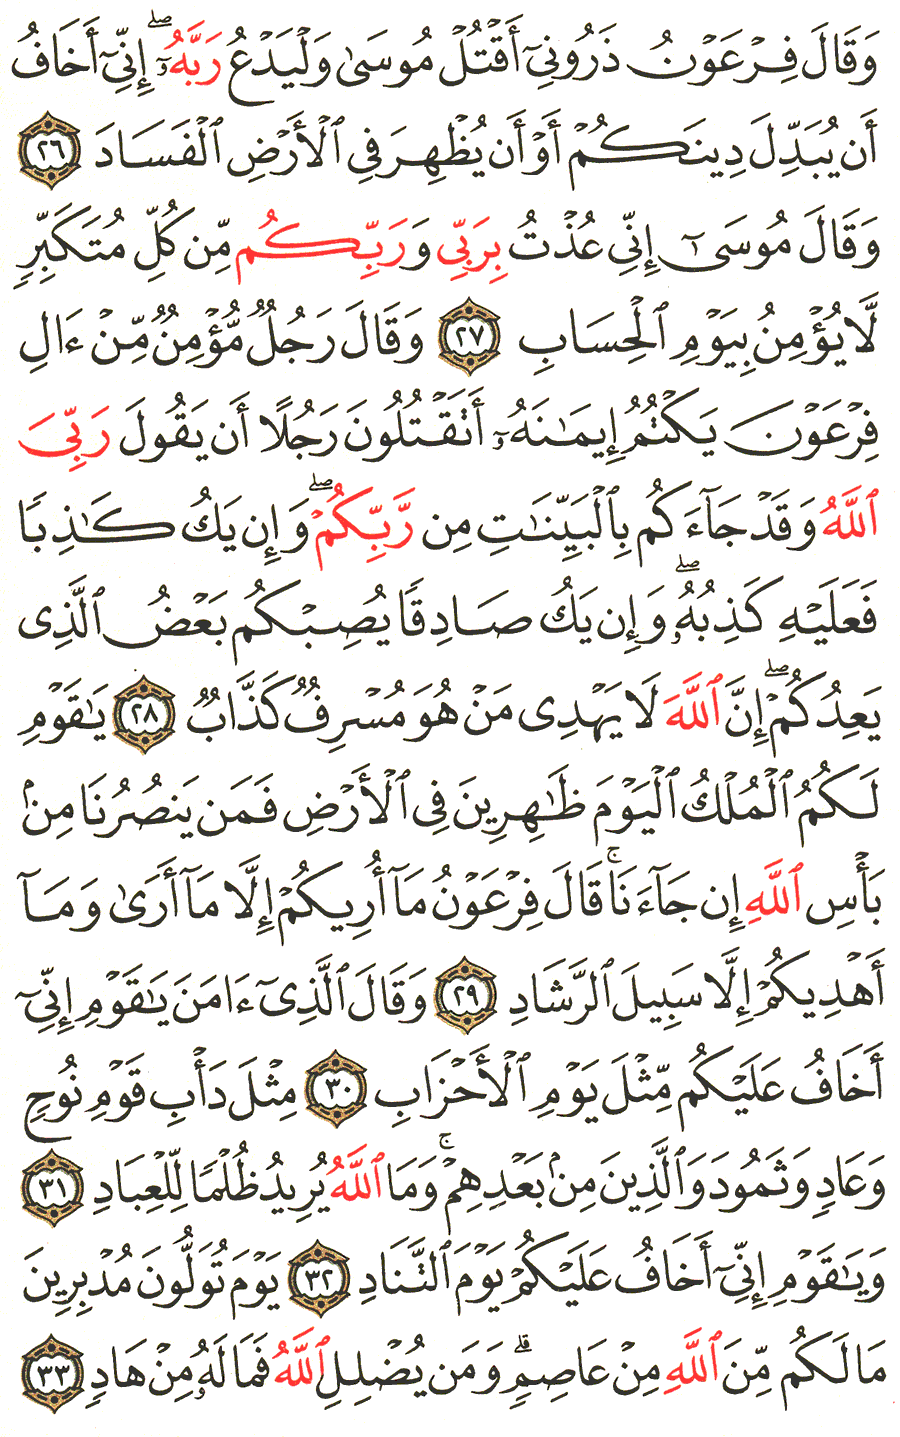 الصفحة 470 من القرآن الكريم